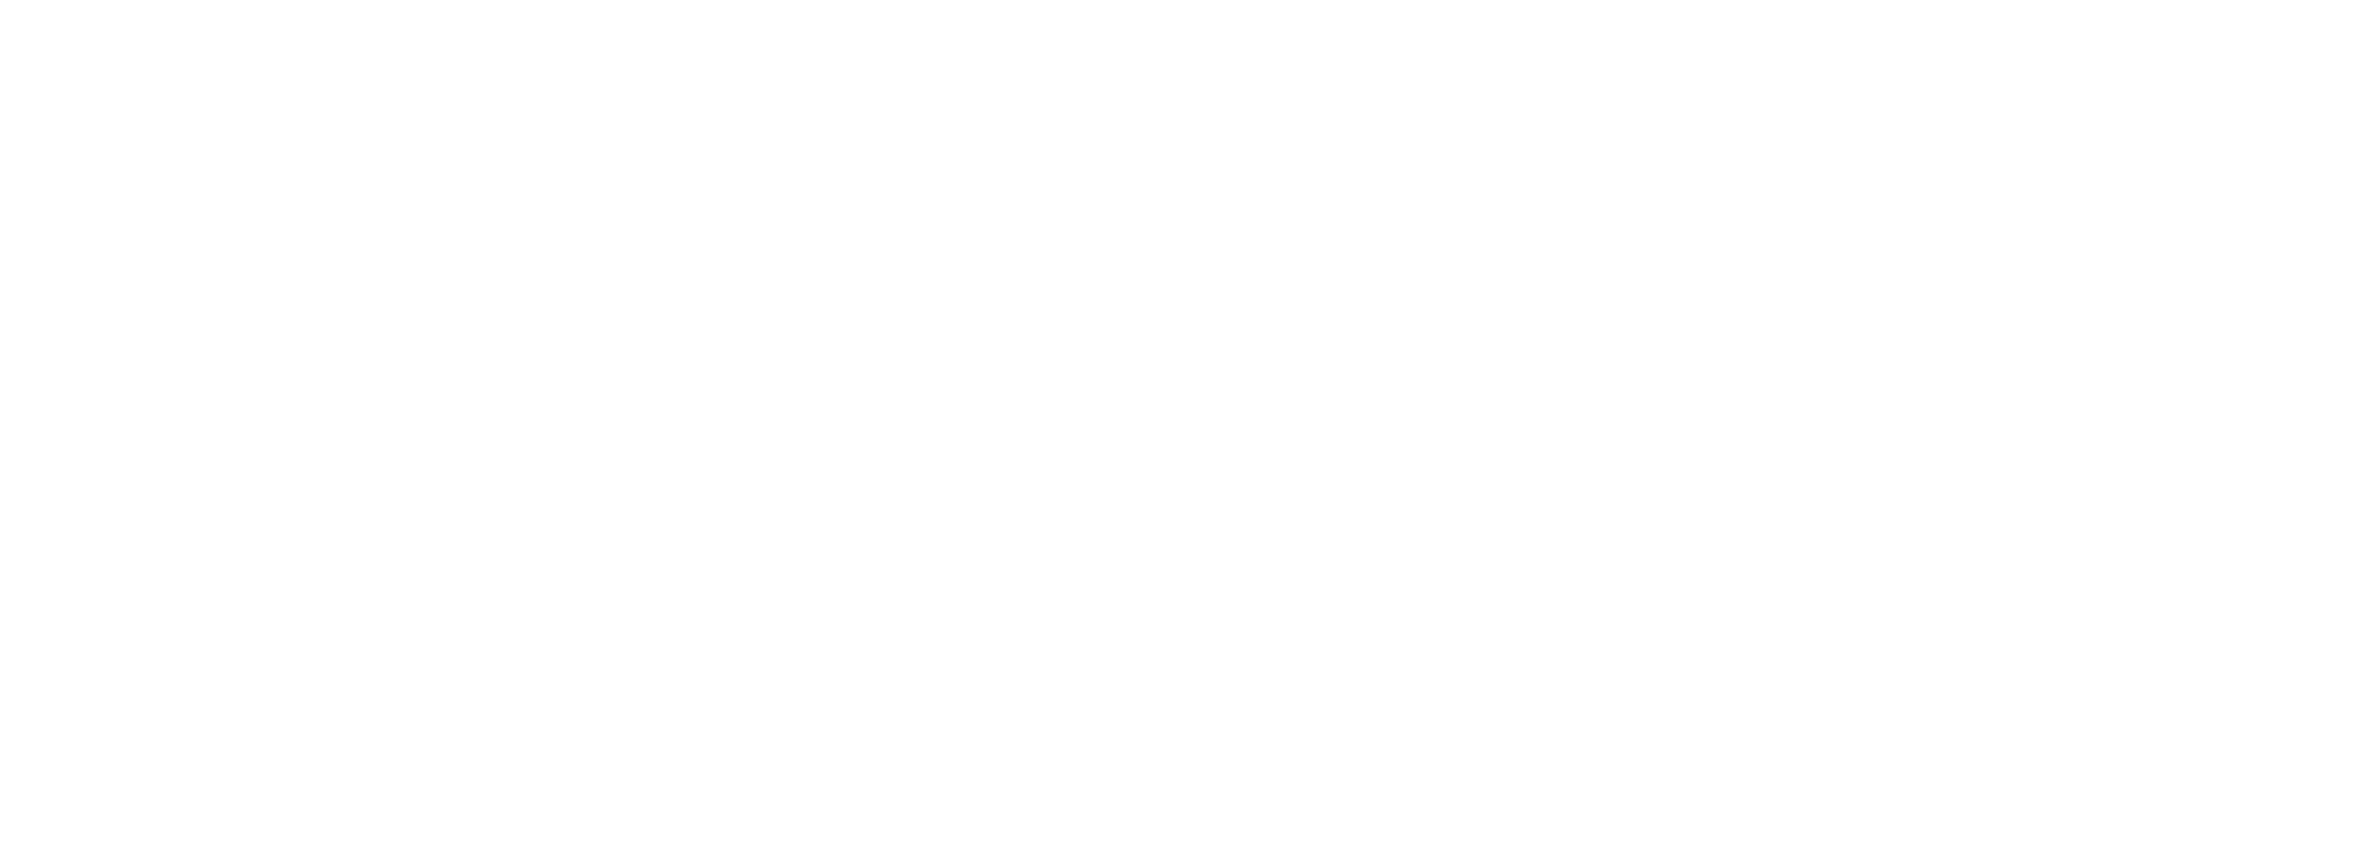 ADAM